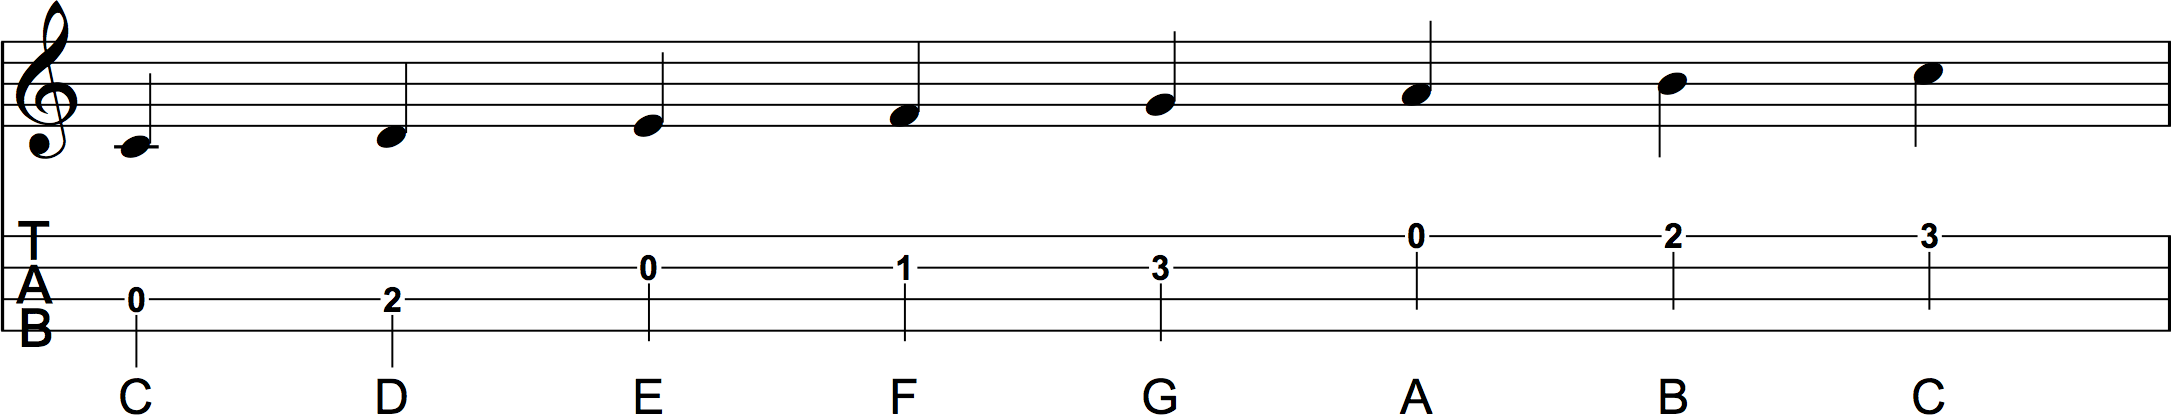 C Major Scale Position 1 Ukulele Sheet Music Notation